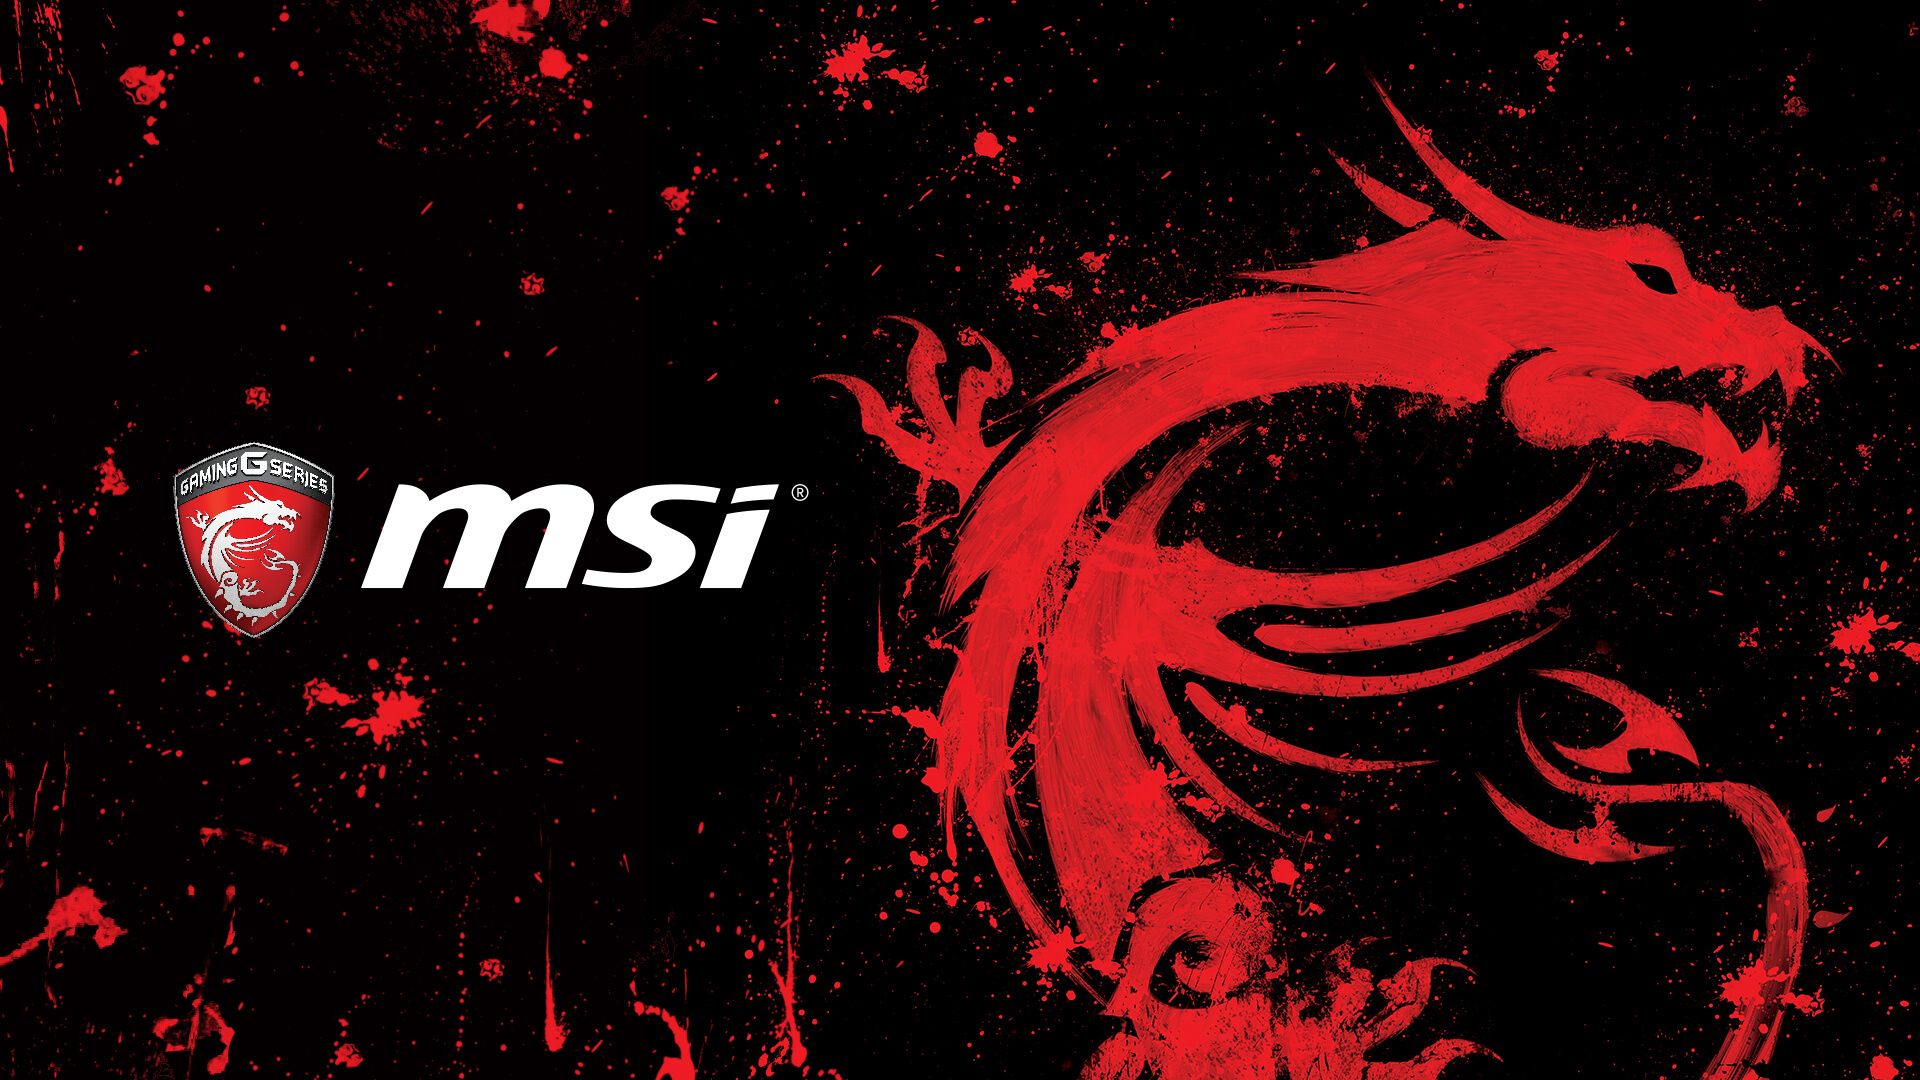 MSI Wallpaper. MSI Red Wallpaper, MSI Gaming Wallpaper and MSI Motherboard Wallpaper